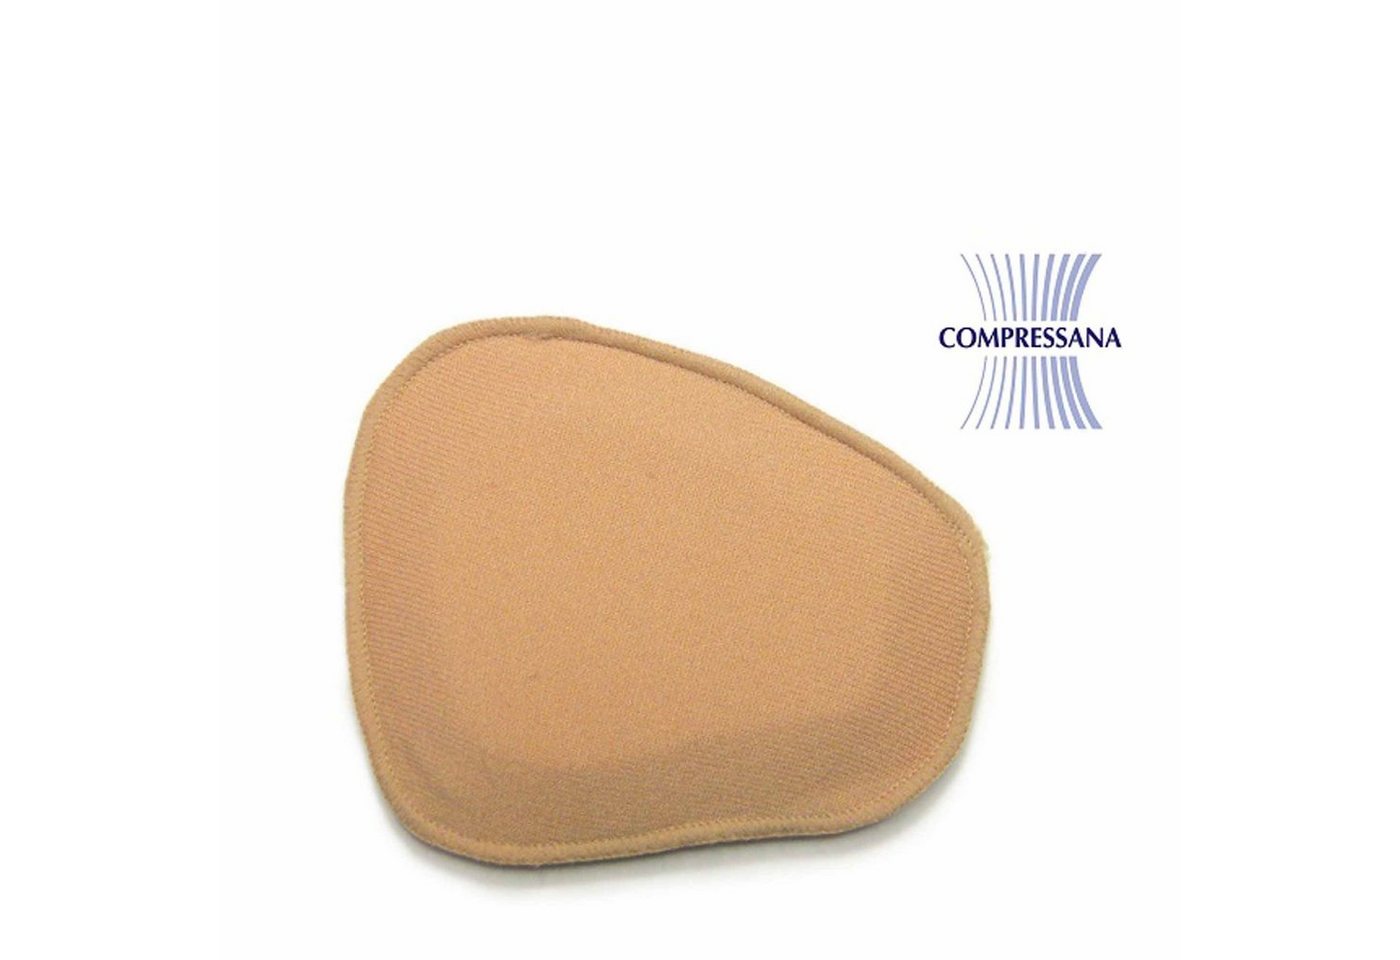 COMPRESSANA Bandage Compressana Kompressionspelotte kurz für Handrücken von COMPRESSANA